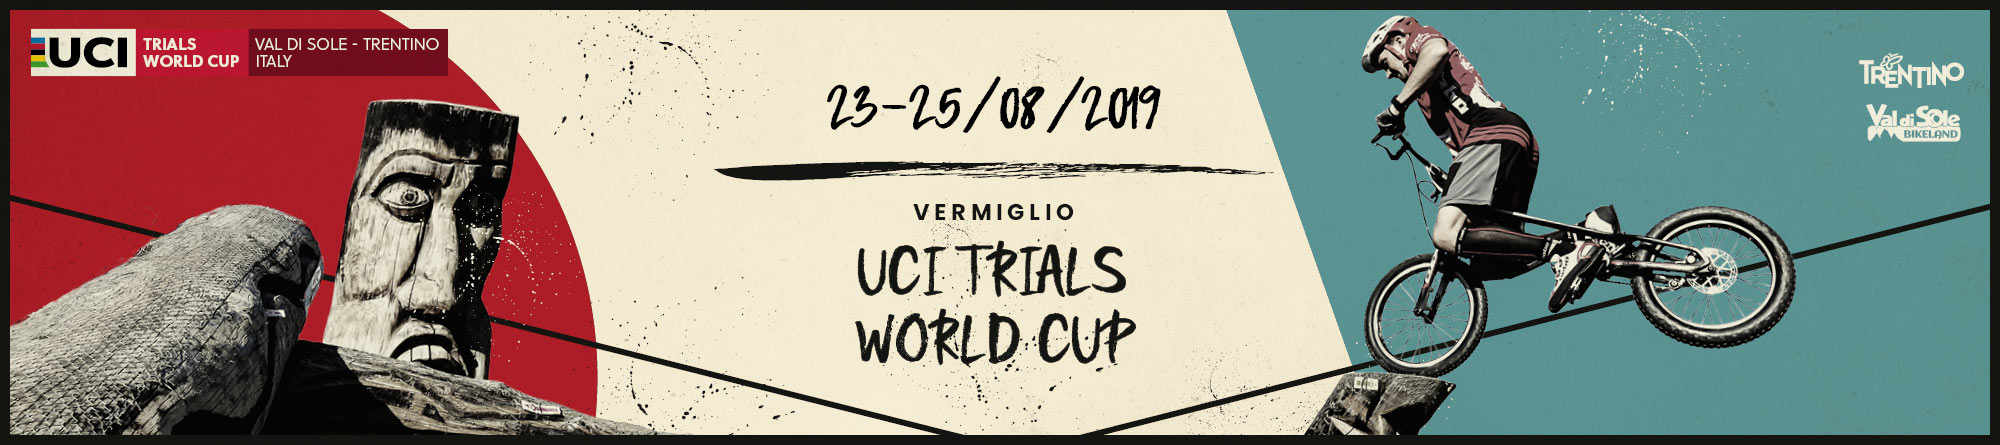 Coppa del Mondo Trial 2019